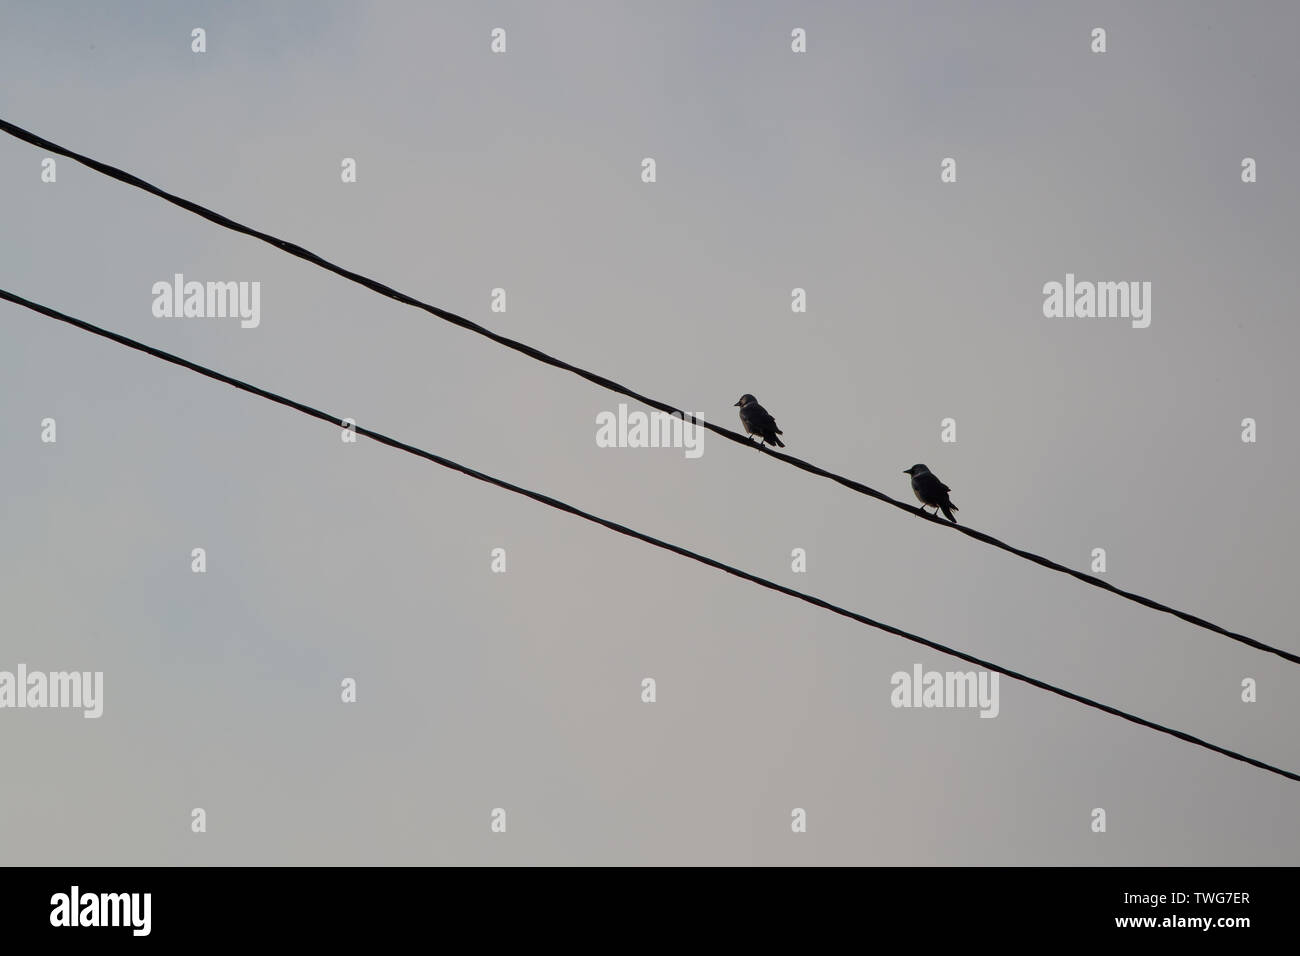 Vögel sitzen auf Drähte gegen einen grauen Himmel Stockfoto